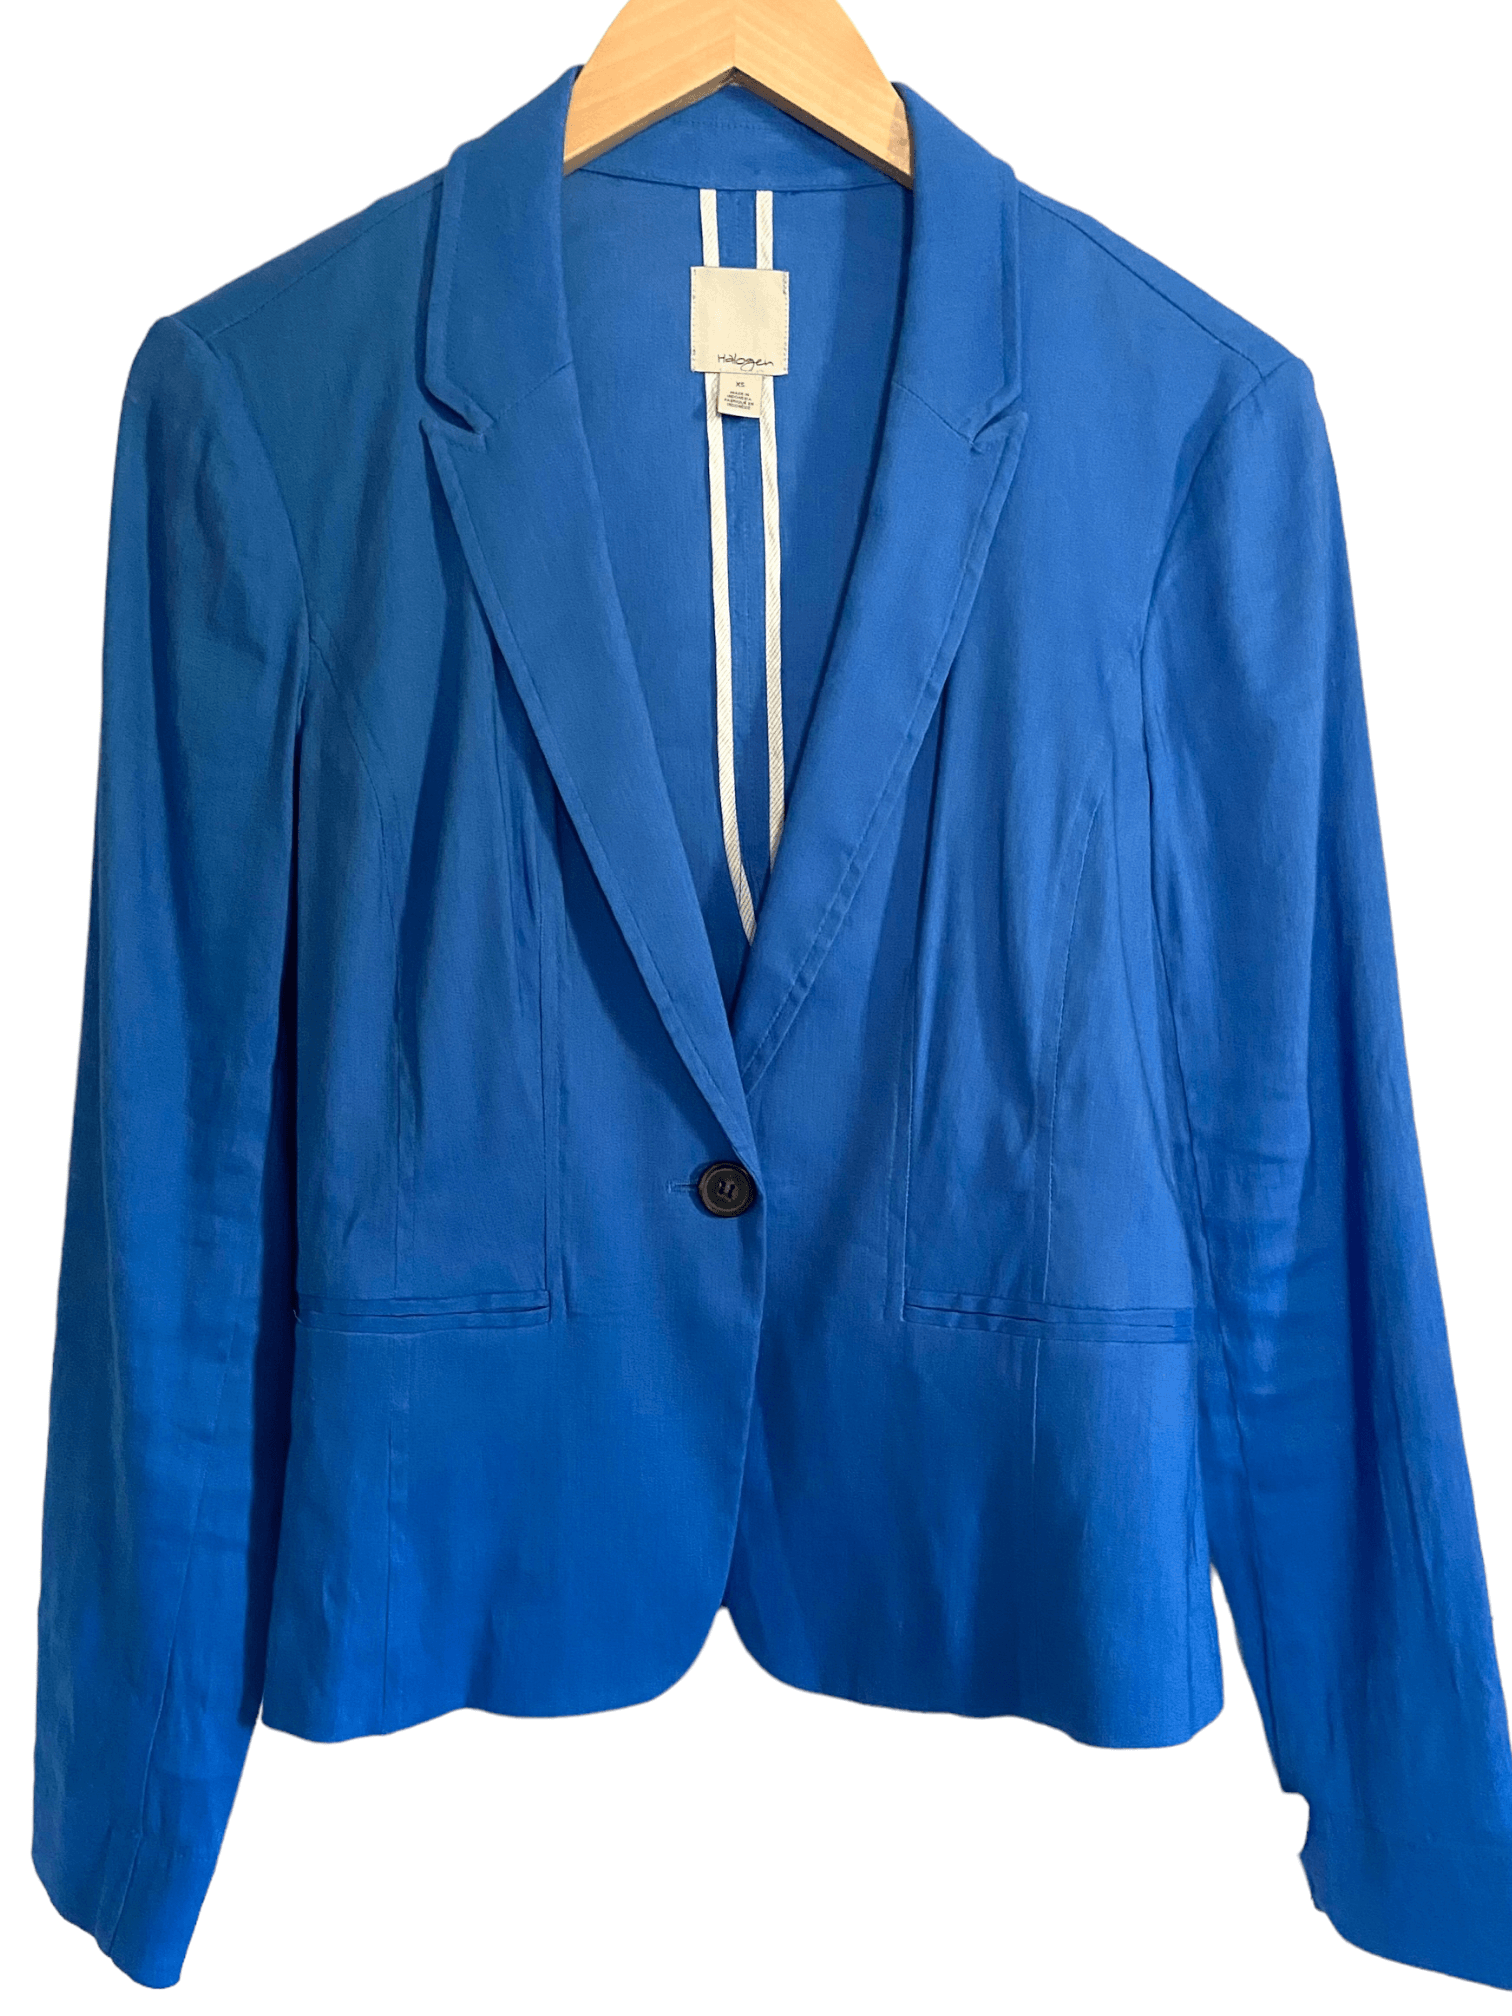 Light Summer HALOGEN capri blue linen blazer